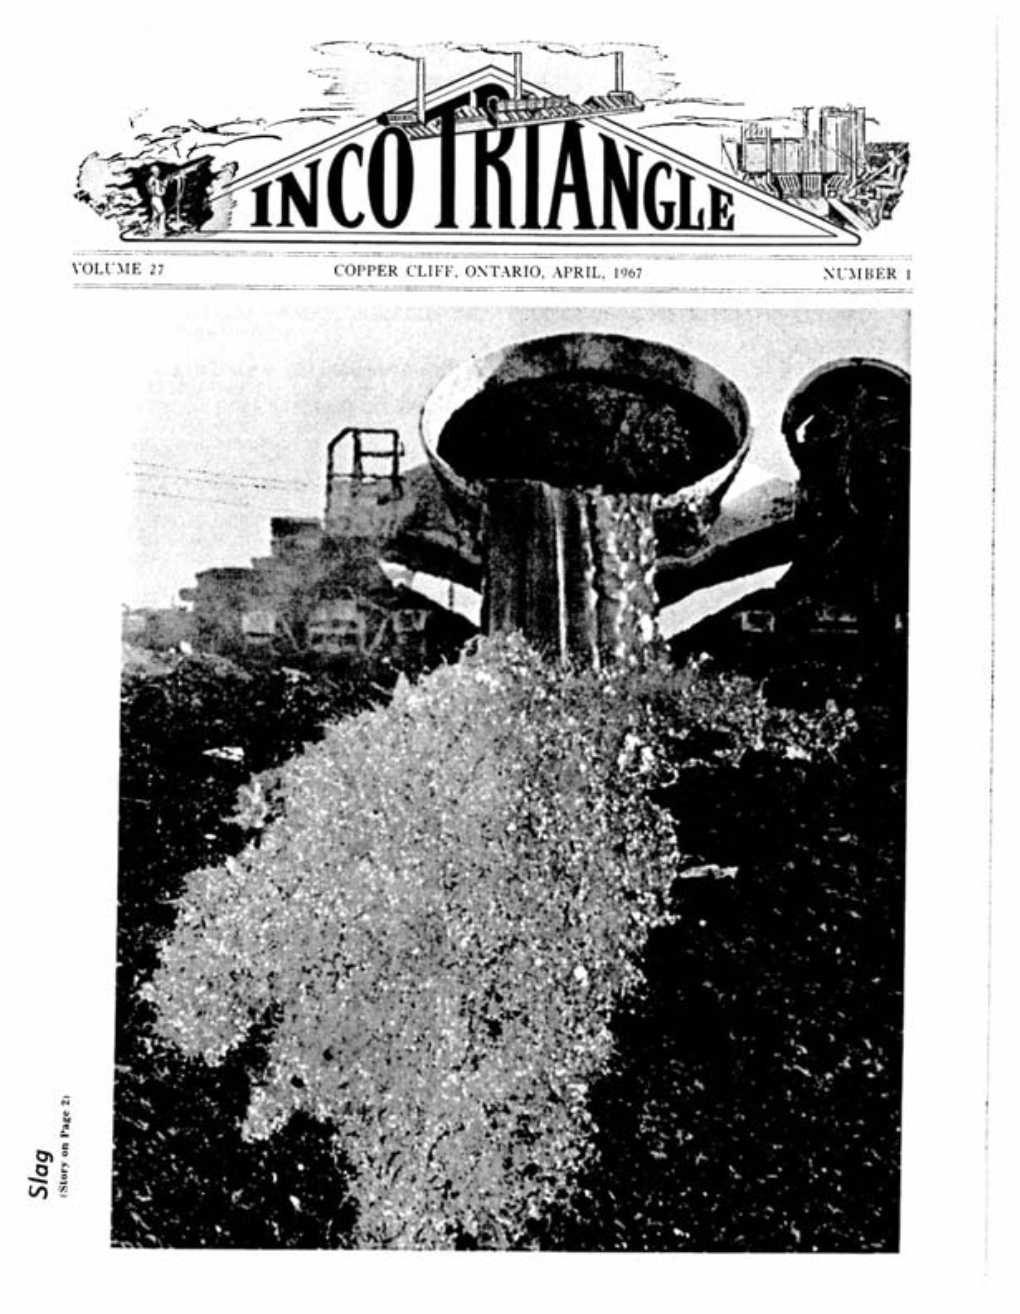 Inco Triangle April, 1967